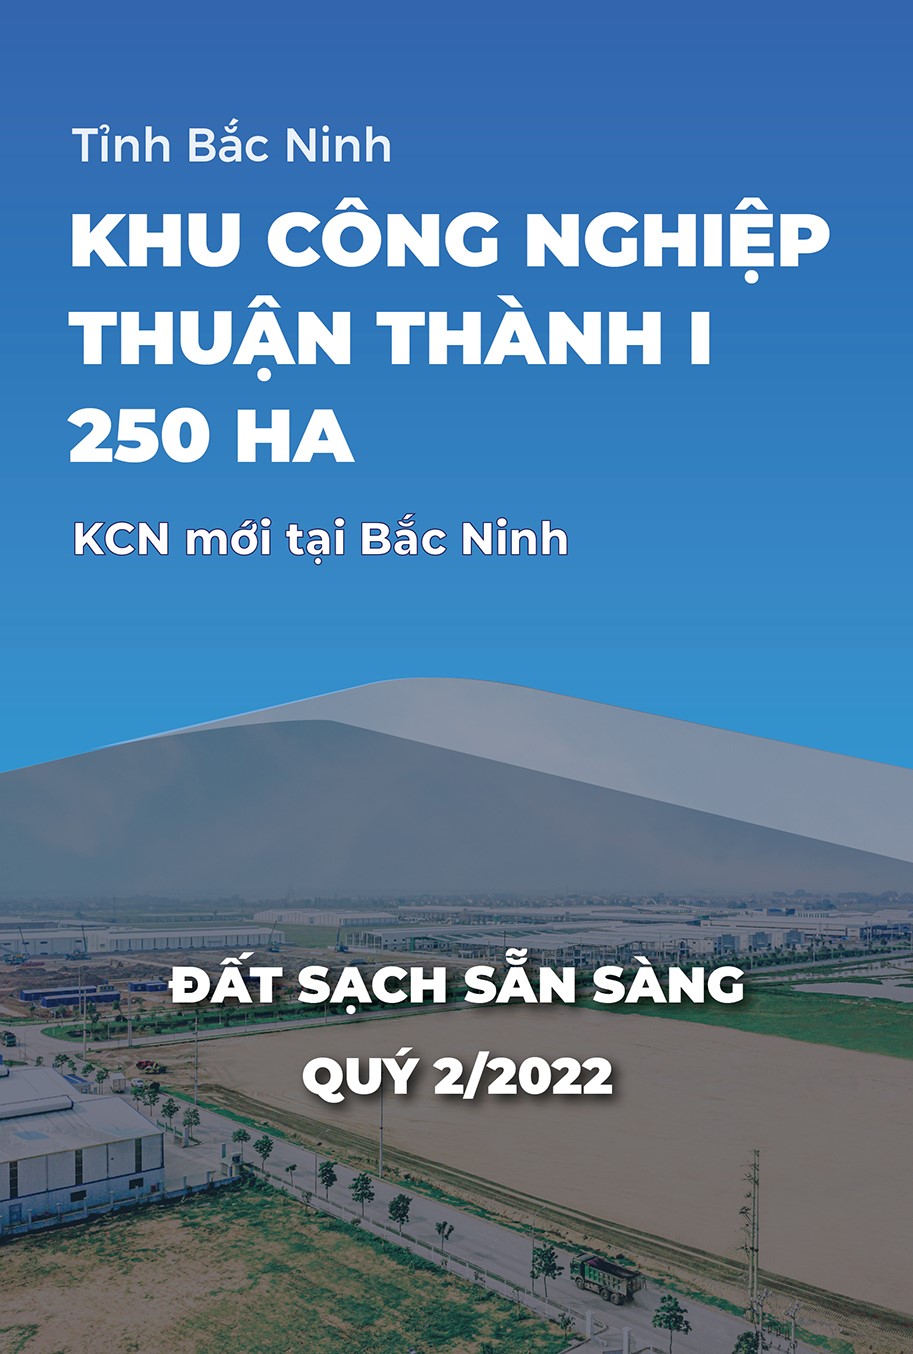 KCN Thuận Thành 1